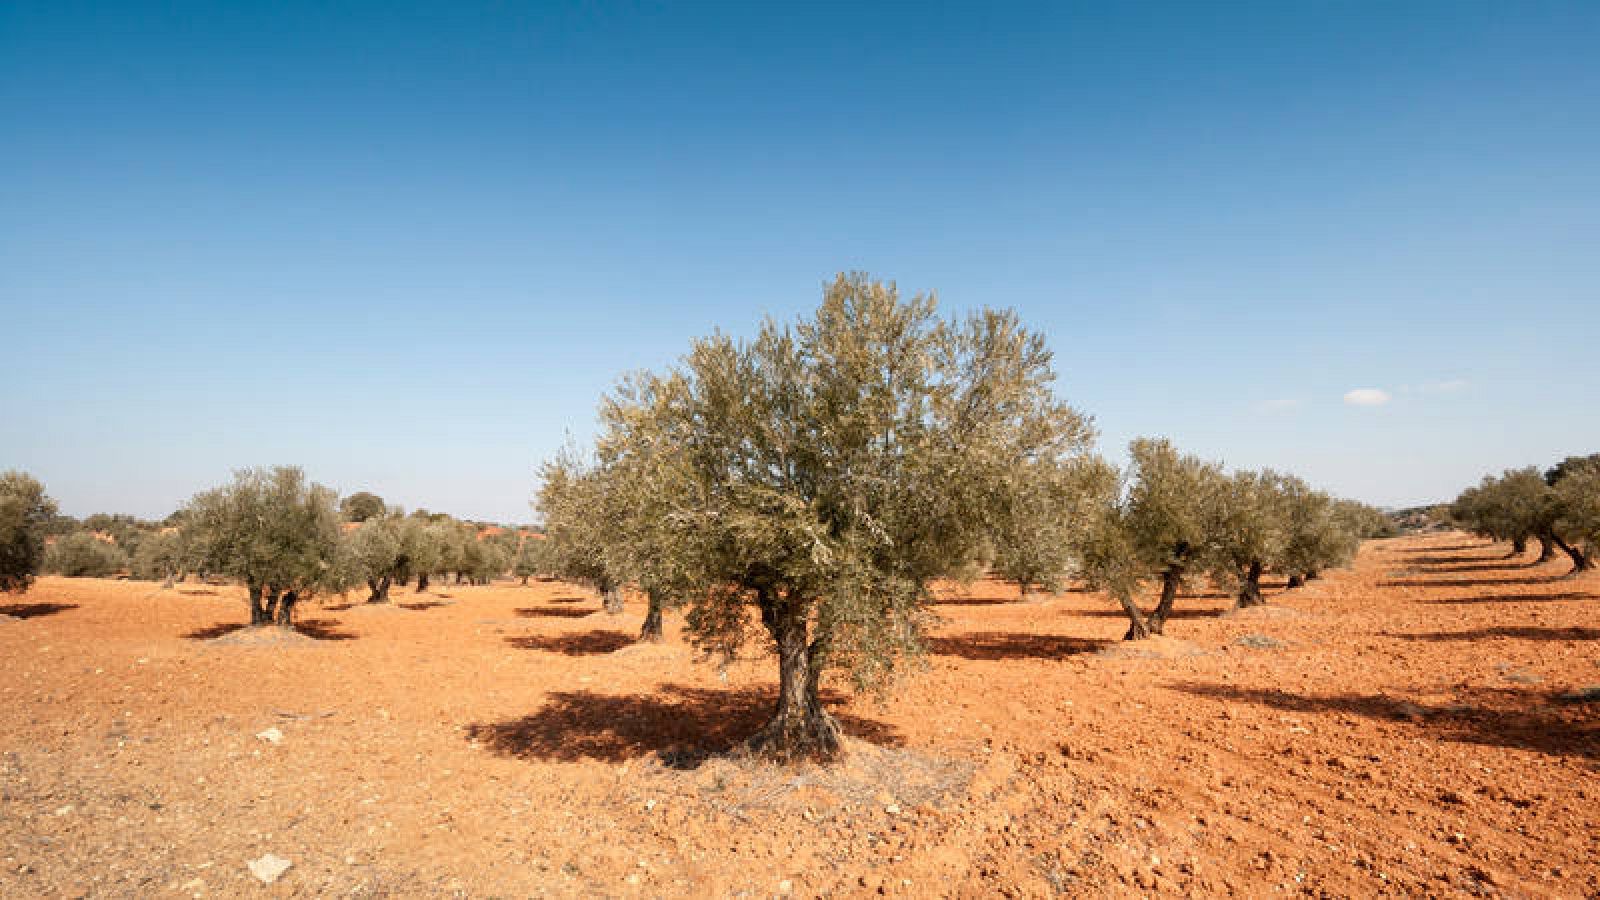 La Xylella fastidiosa puede causar graves daños en cultivos como olivo, vid, frutales de hueso, cítricos, almendros y numerosas especies ornamentales.